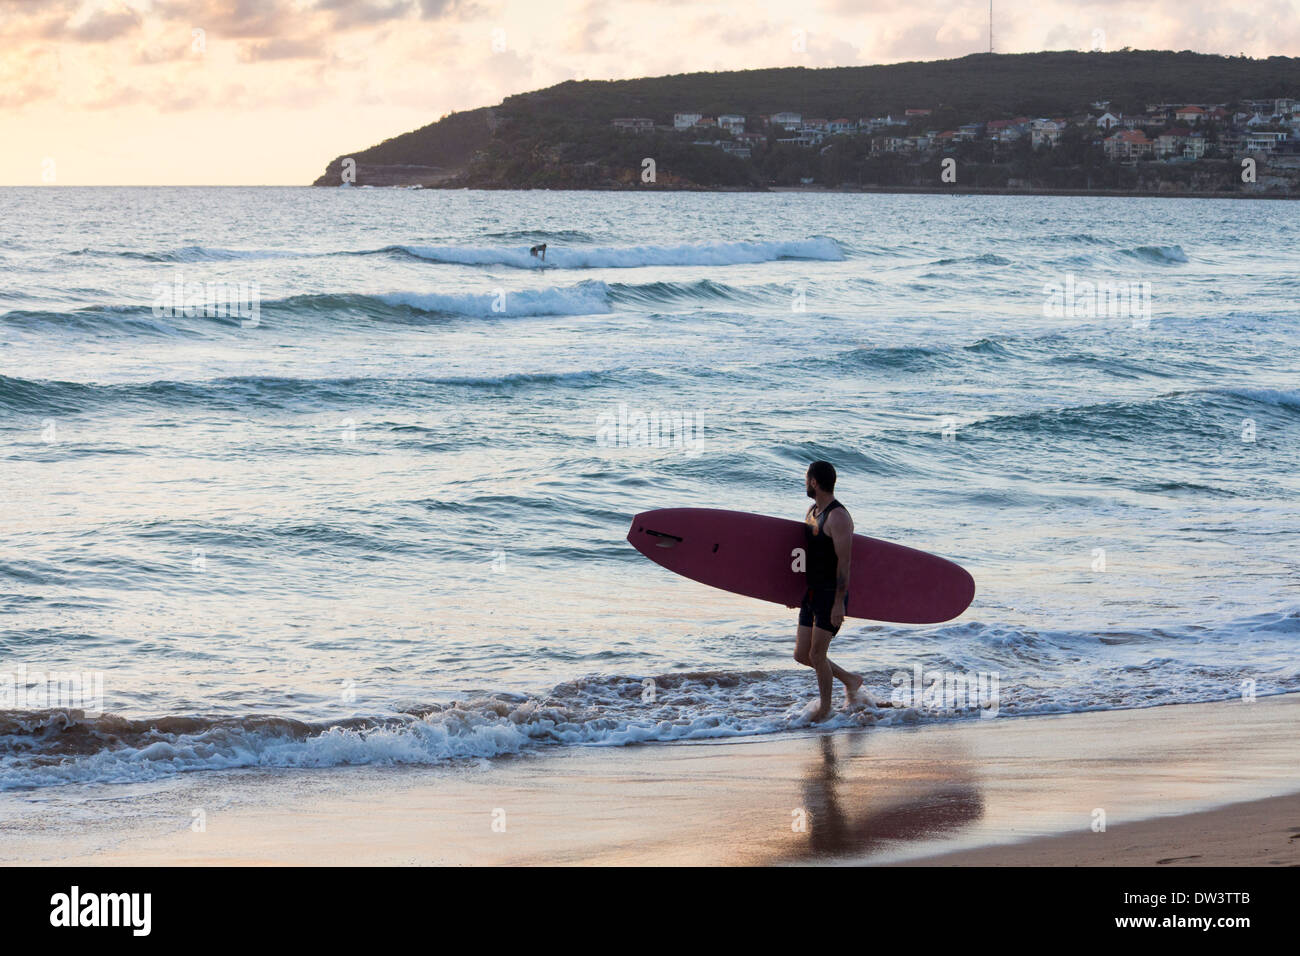 Surfer carrying surfboard conseil entrant au lever du soleil sur la mer du Nord plage dawn Steyne Manly Sydney NSW Australie Nouvelle Galles du Sud Banque D'Images